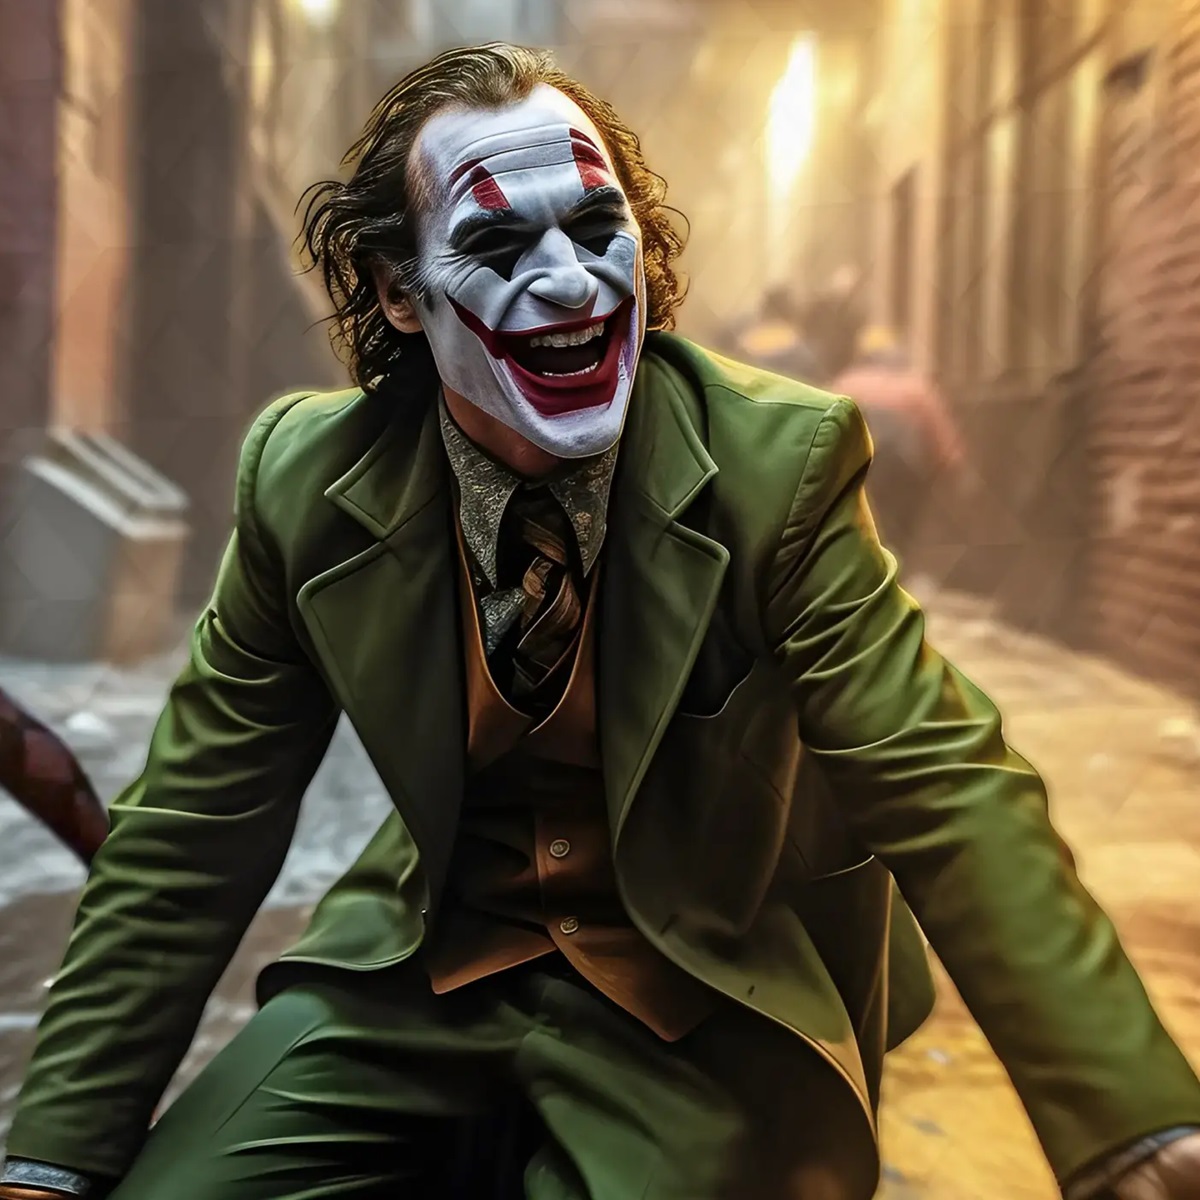 Joker 2  Folie à Deux anticipazioni trama cast trailer ufficiale data lady gaga 